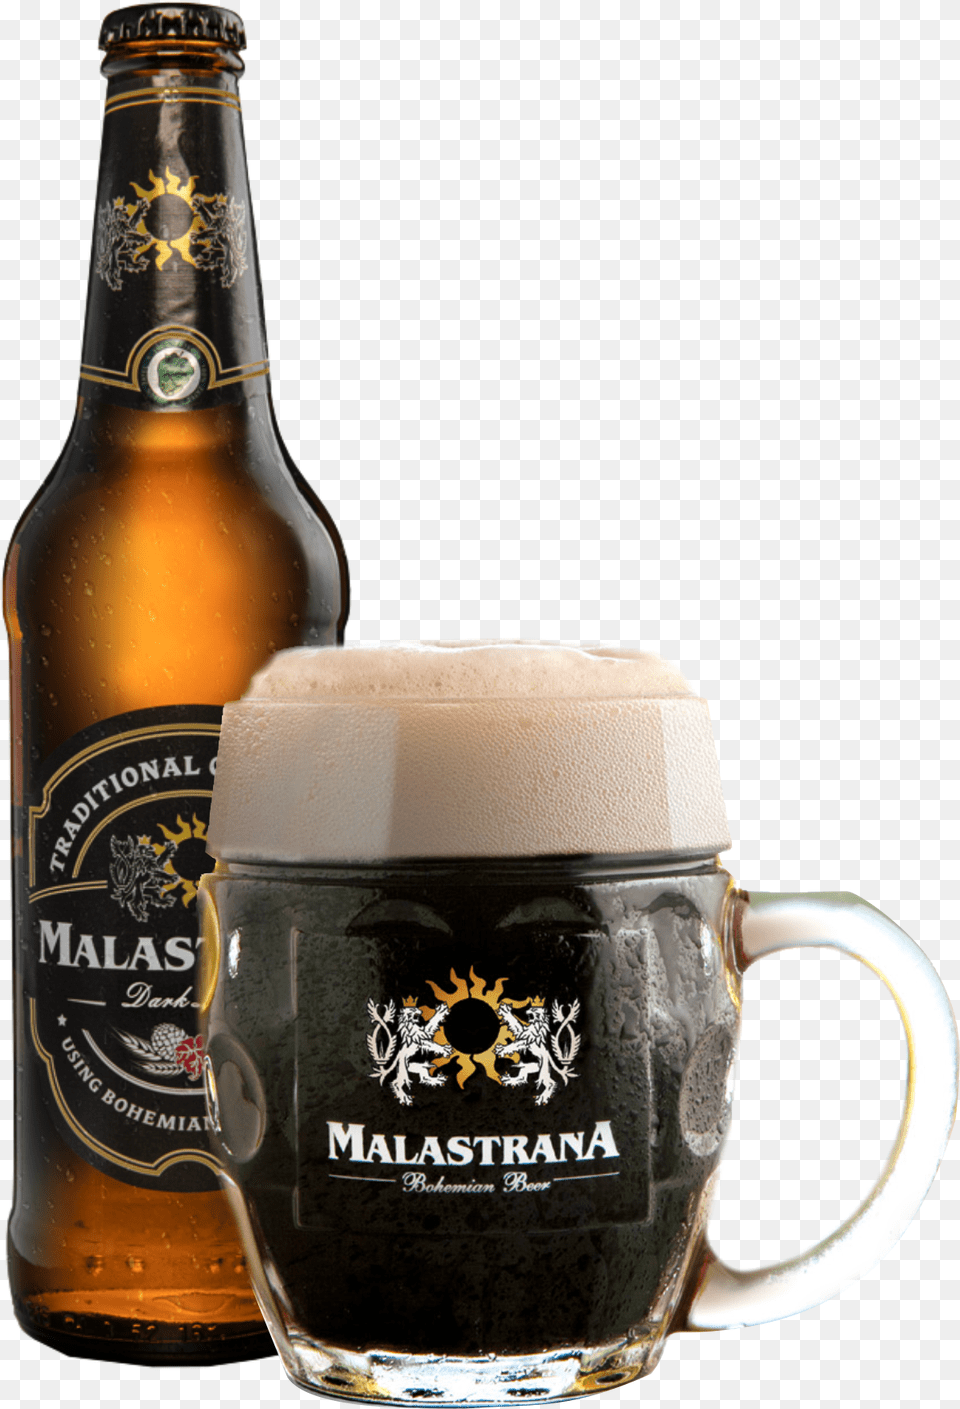 Malastrana Dark Beer Bottle, Alcohol, Beverage, Lager, Glass Png Image